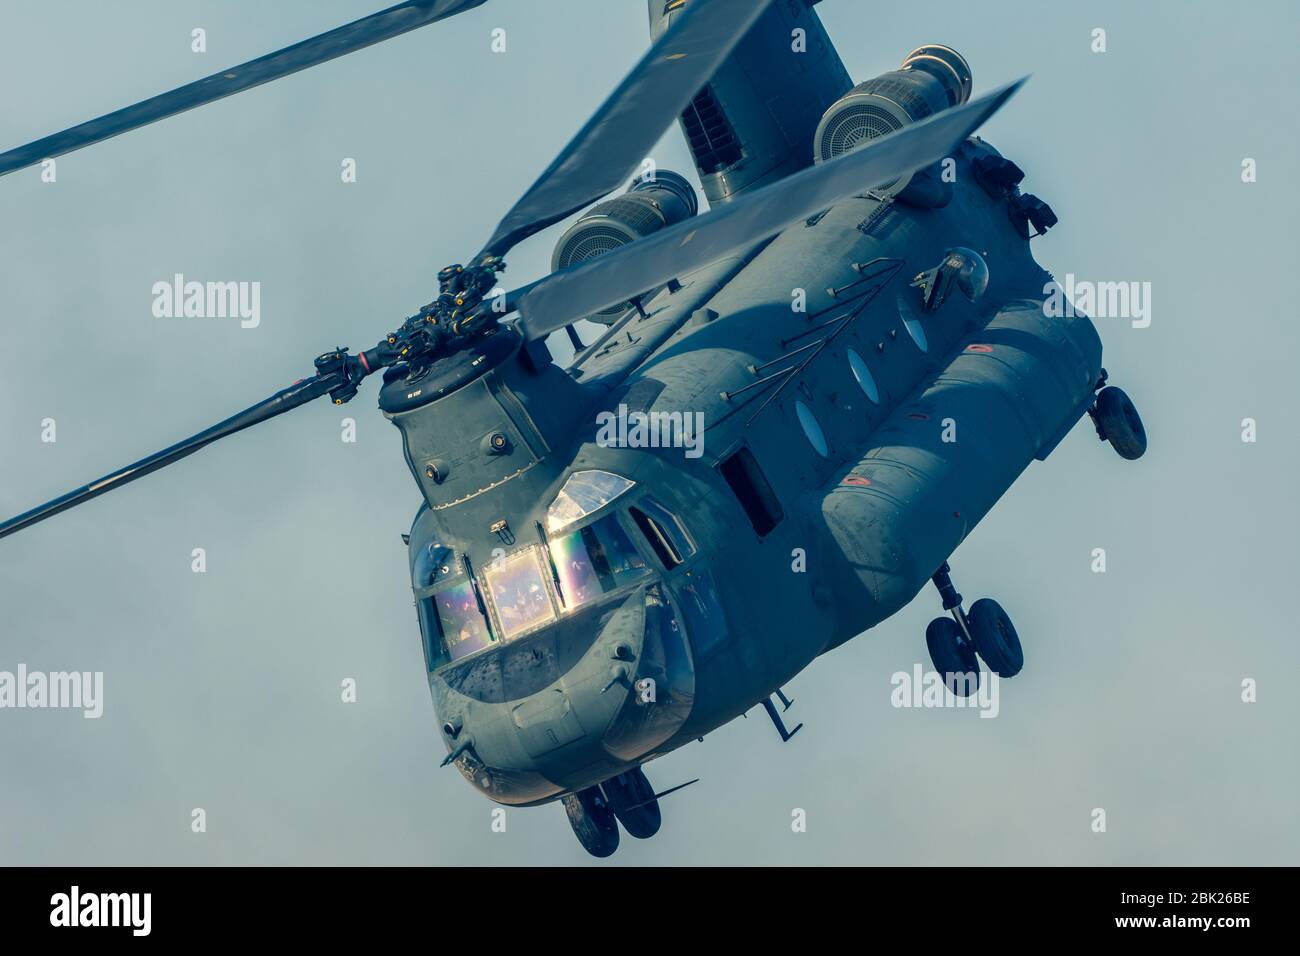 Militärkampf und Krieg mit Chinook-Hubschrauber schließen sich dem Durchfliegen des Chaos an. Militärisches Konzept von Macht, Gewalt, Stärke, luftangriff. Stockfoto